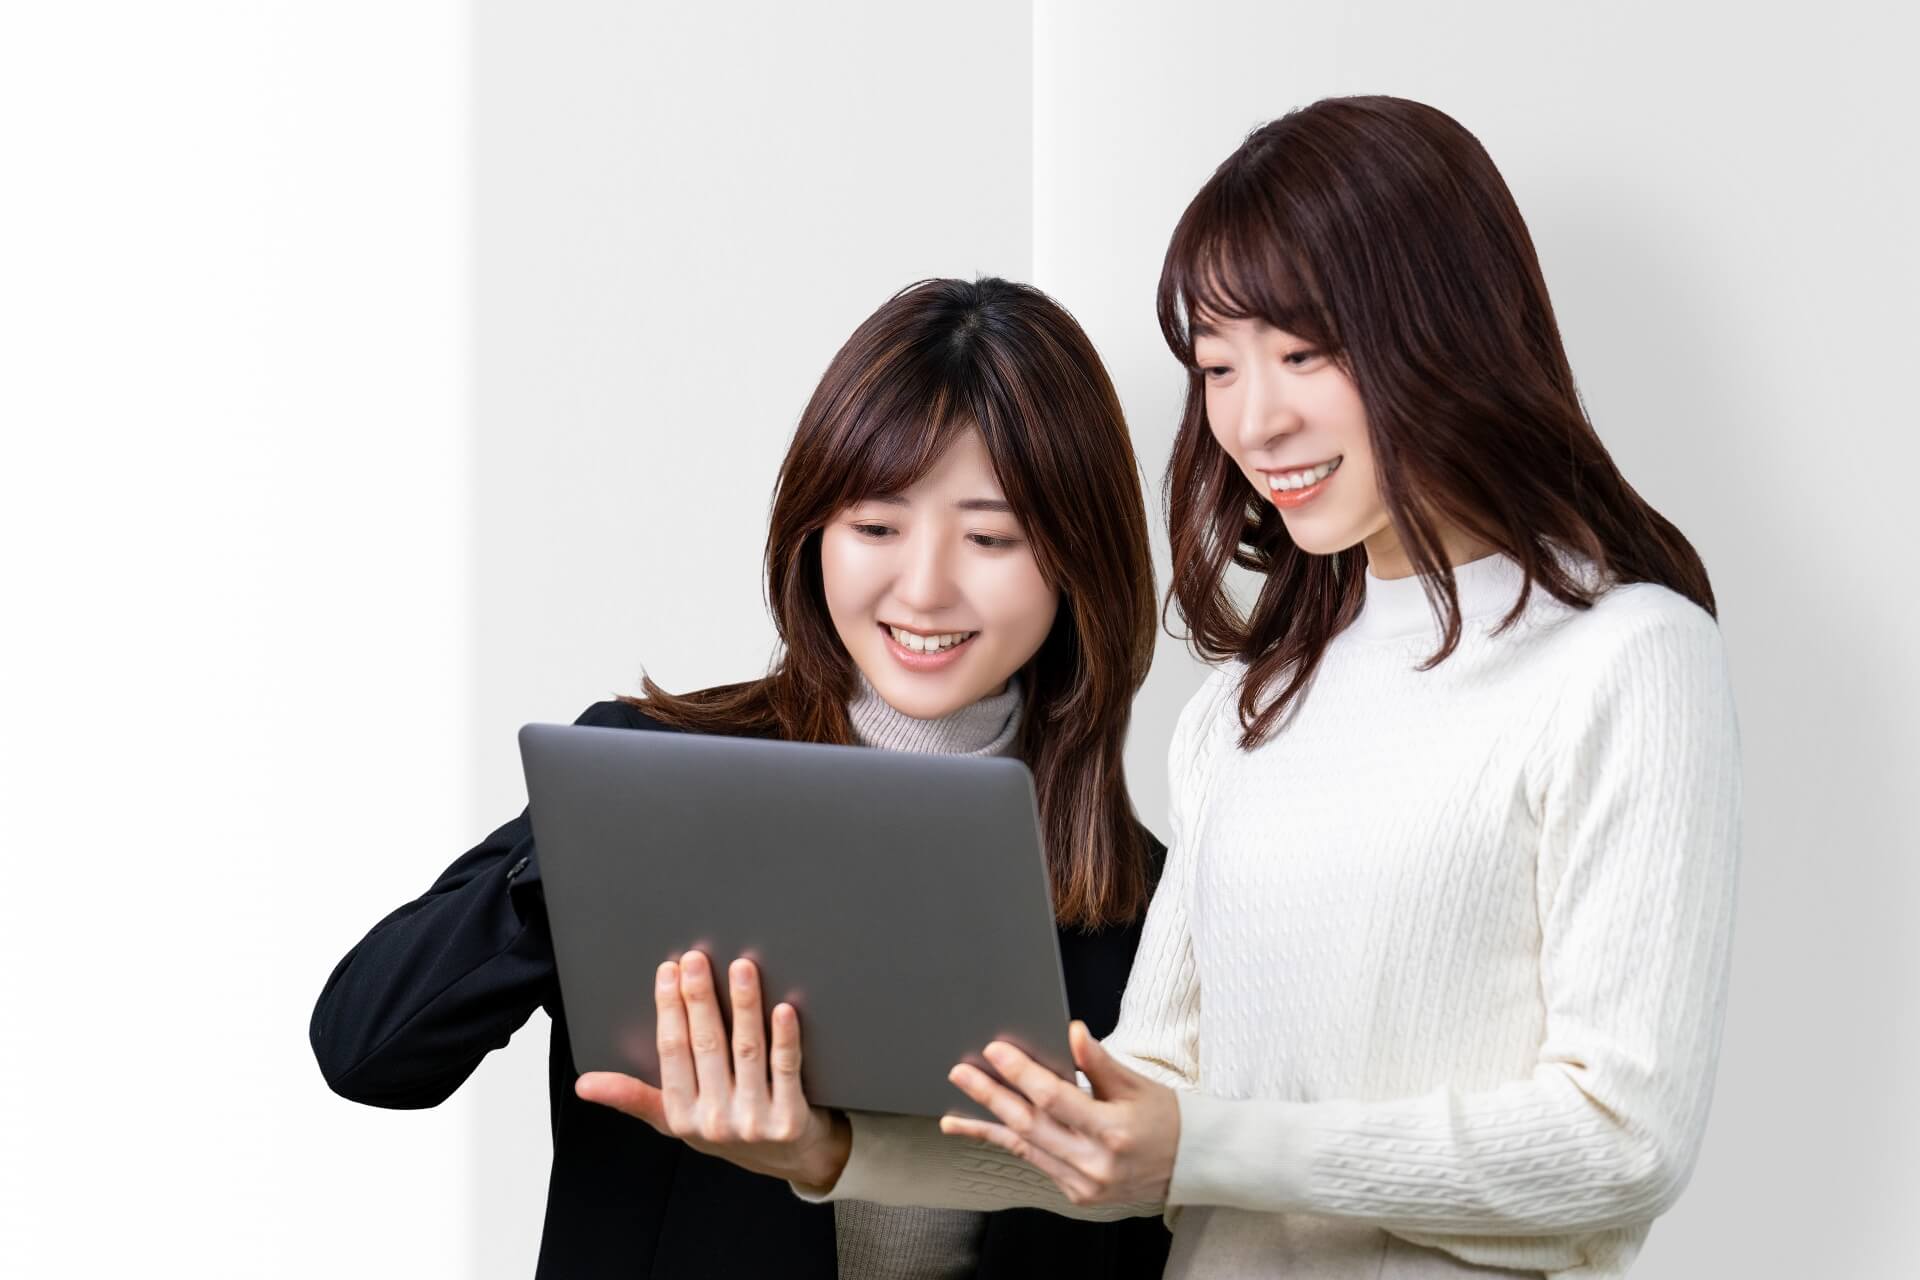 パソコンの前で笑っている2人の女性の画像